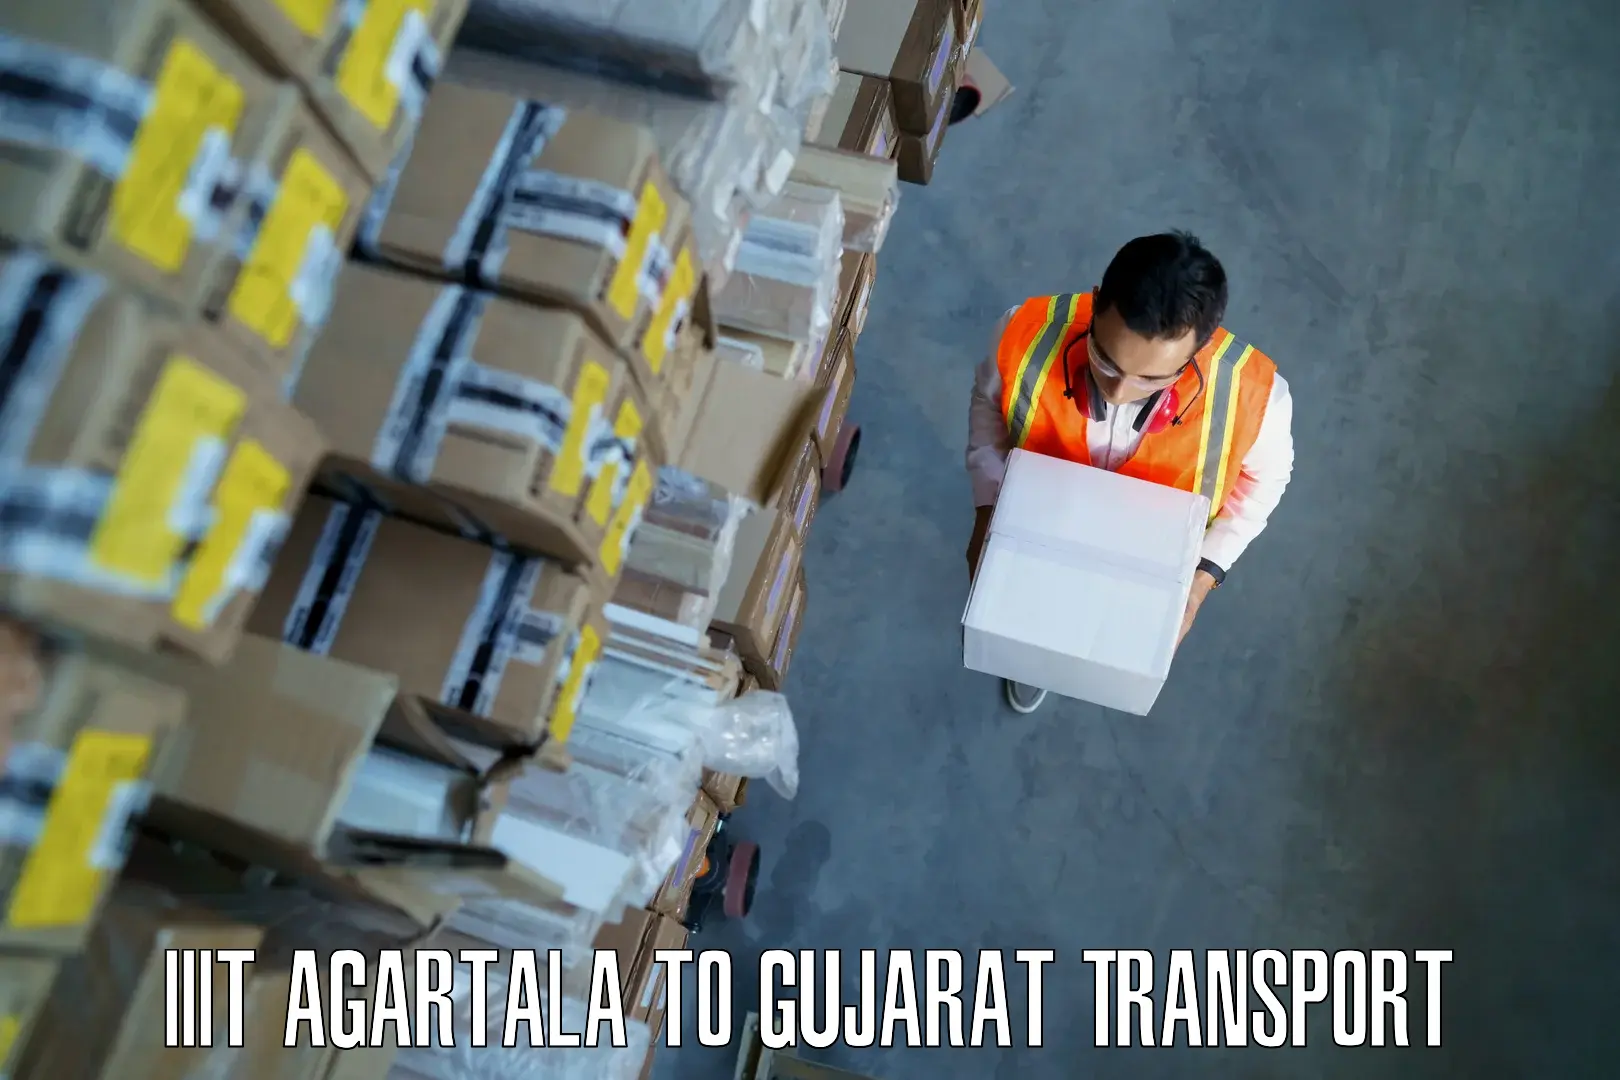 Truck transport companies in India IIIT Agartala to Mahuva